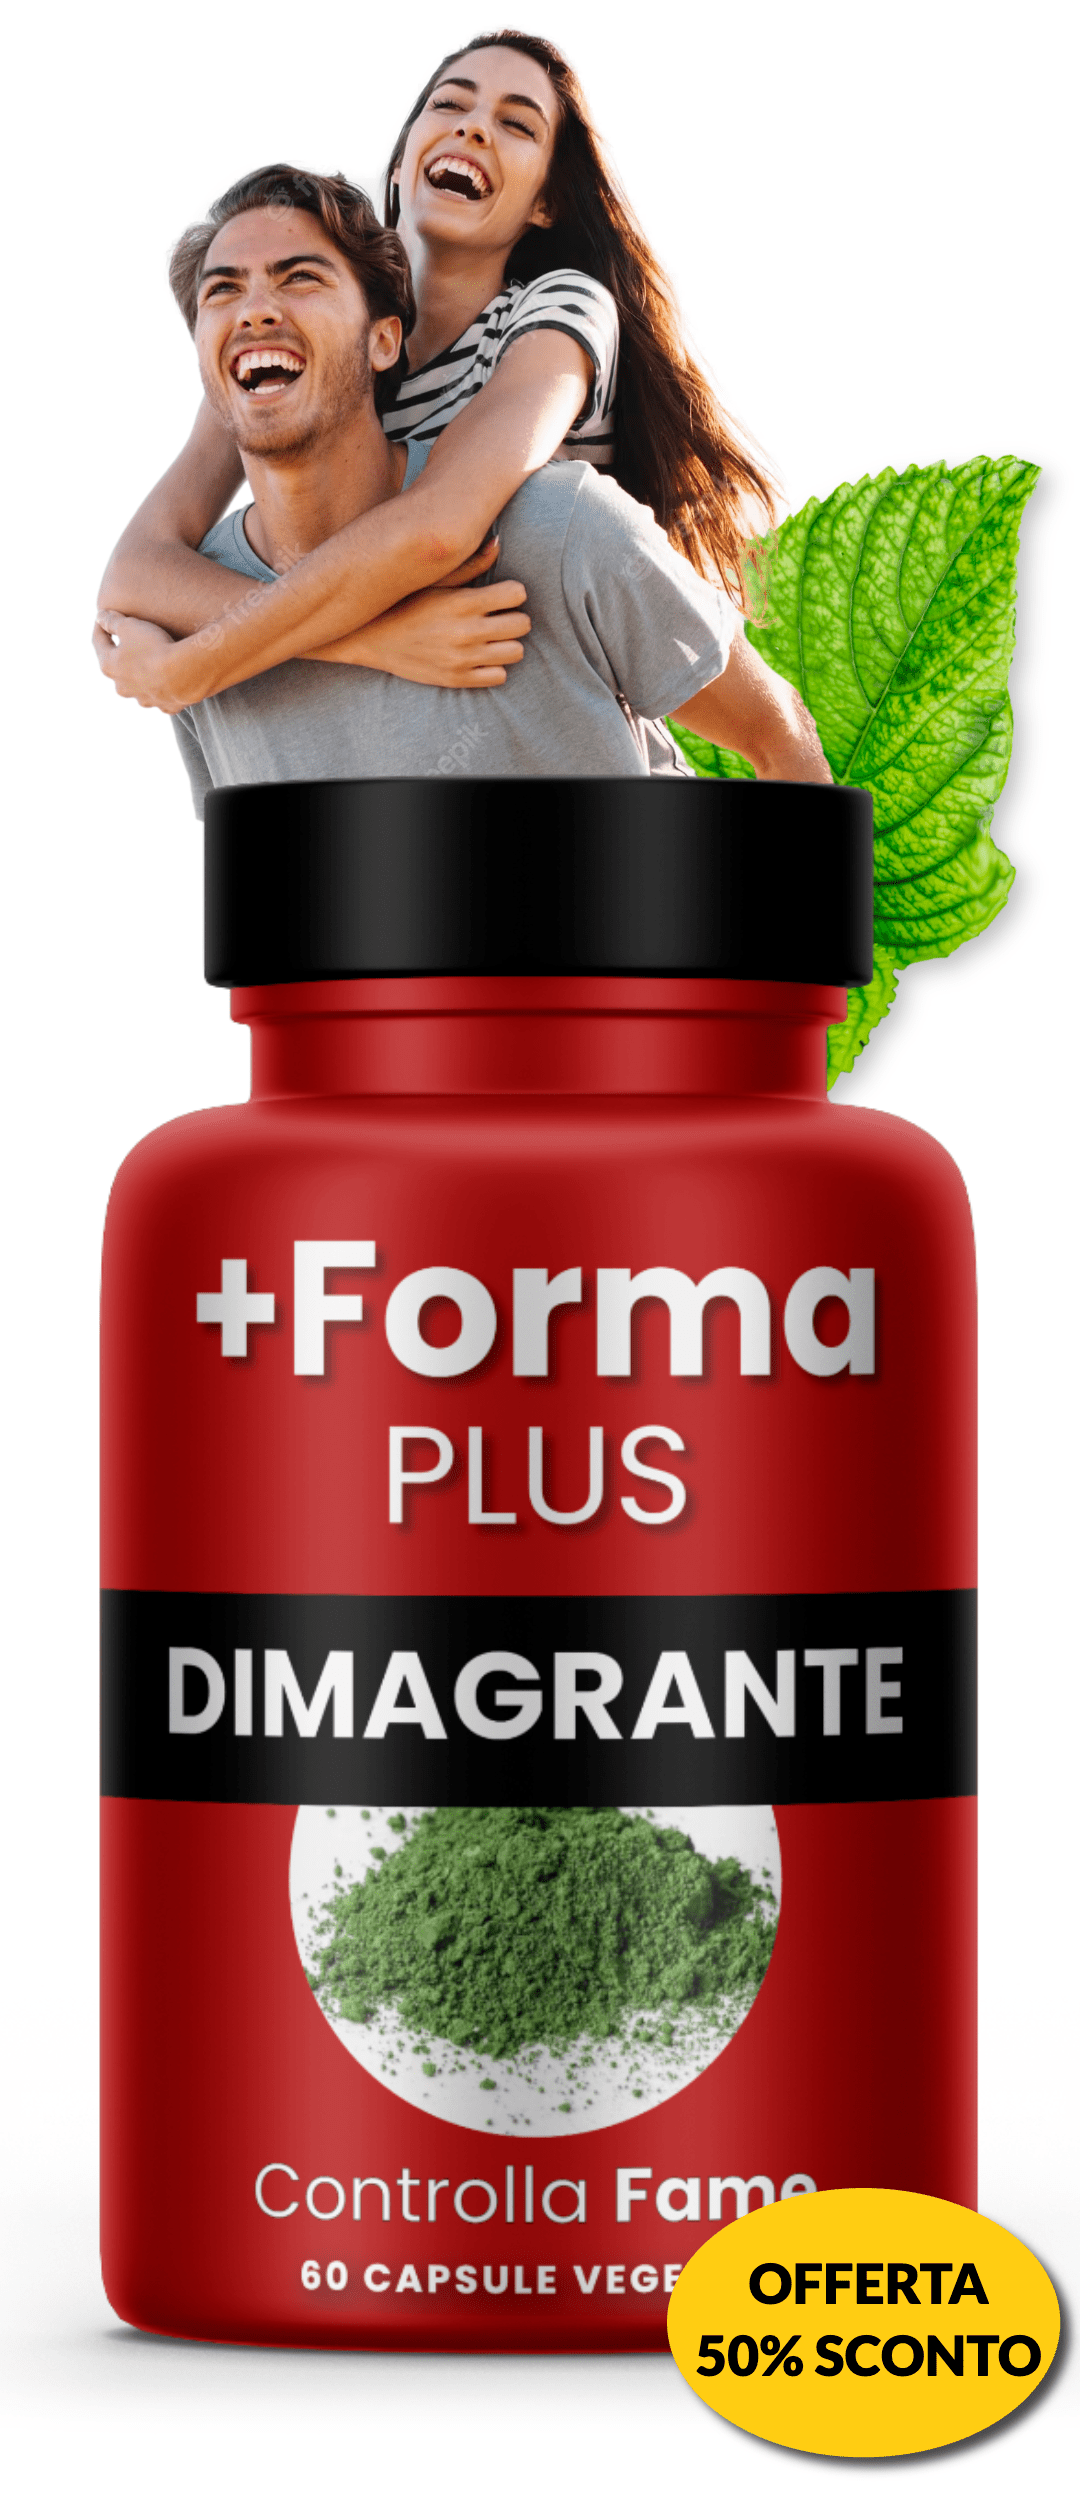 Integratore Dimagrante Forte +Forma Controlla Fame